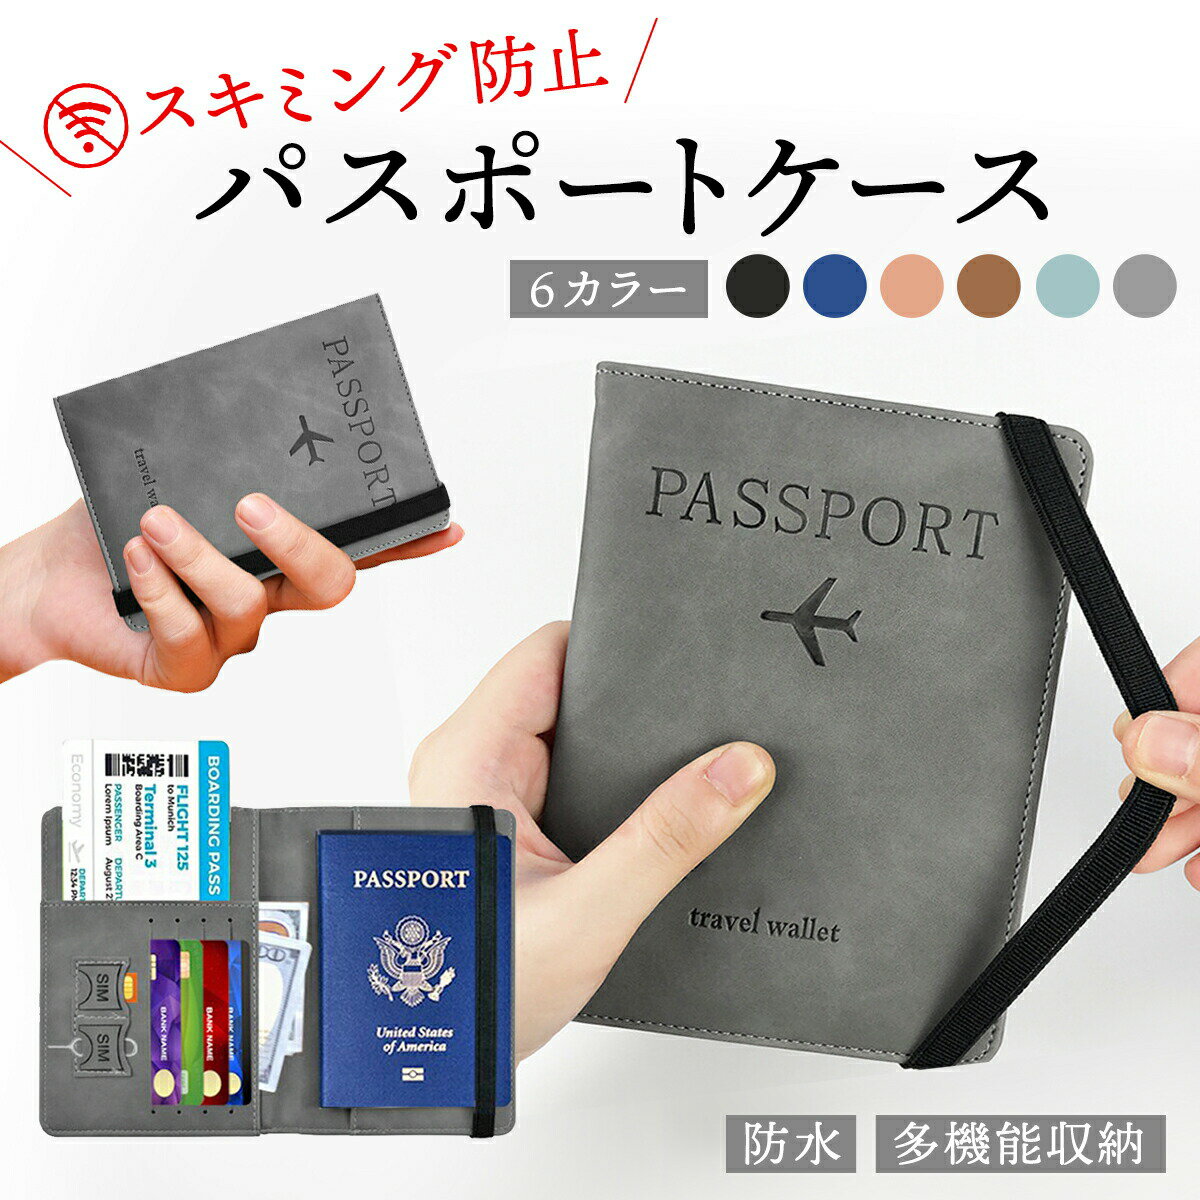 【1000円OFFクーポンあり】 パスポートケース スキミン